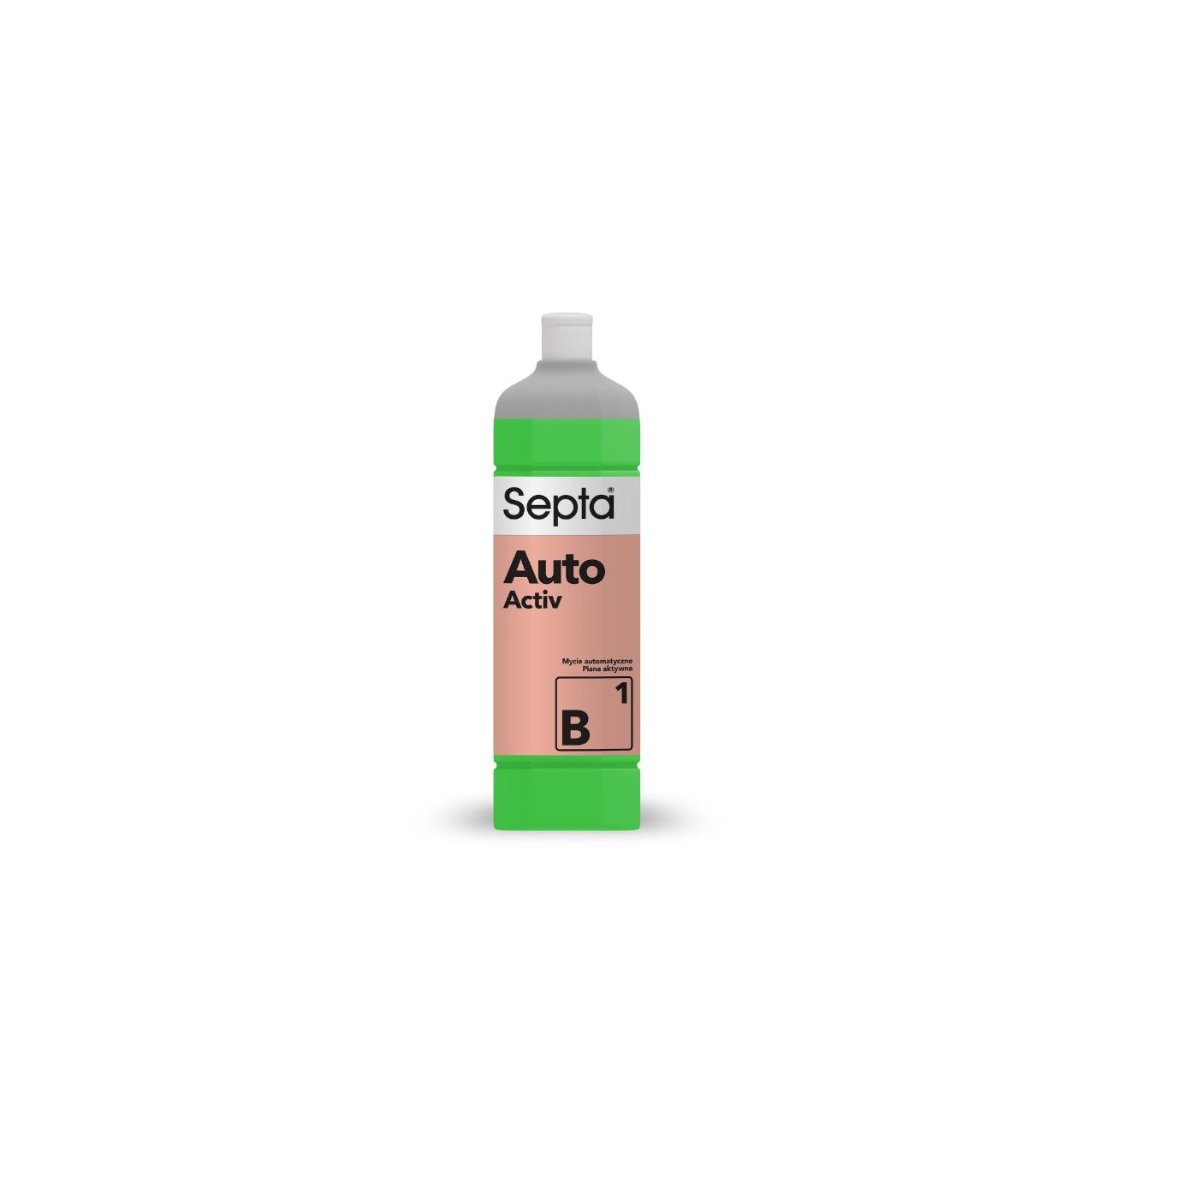 Septa Auto Activ B 1 profesjonalny płyn do mycia samochodów w atomatycznych myjniach samochodowych